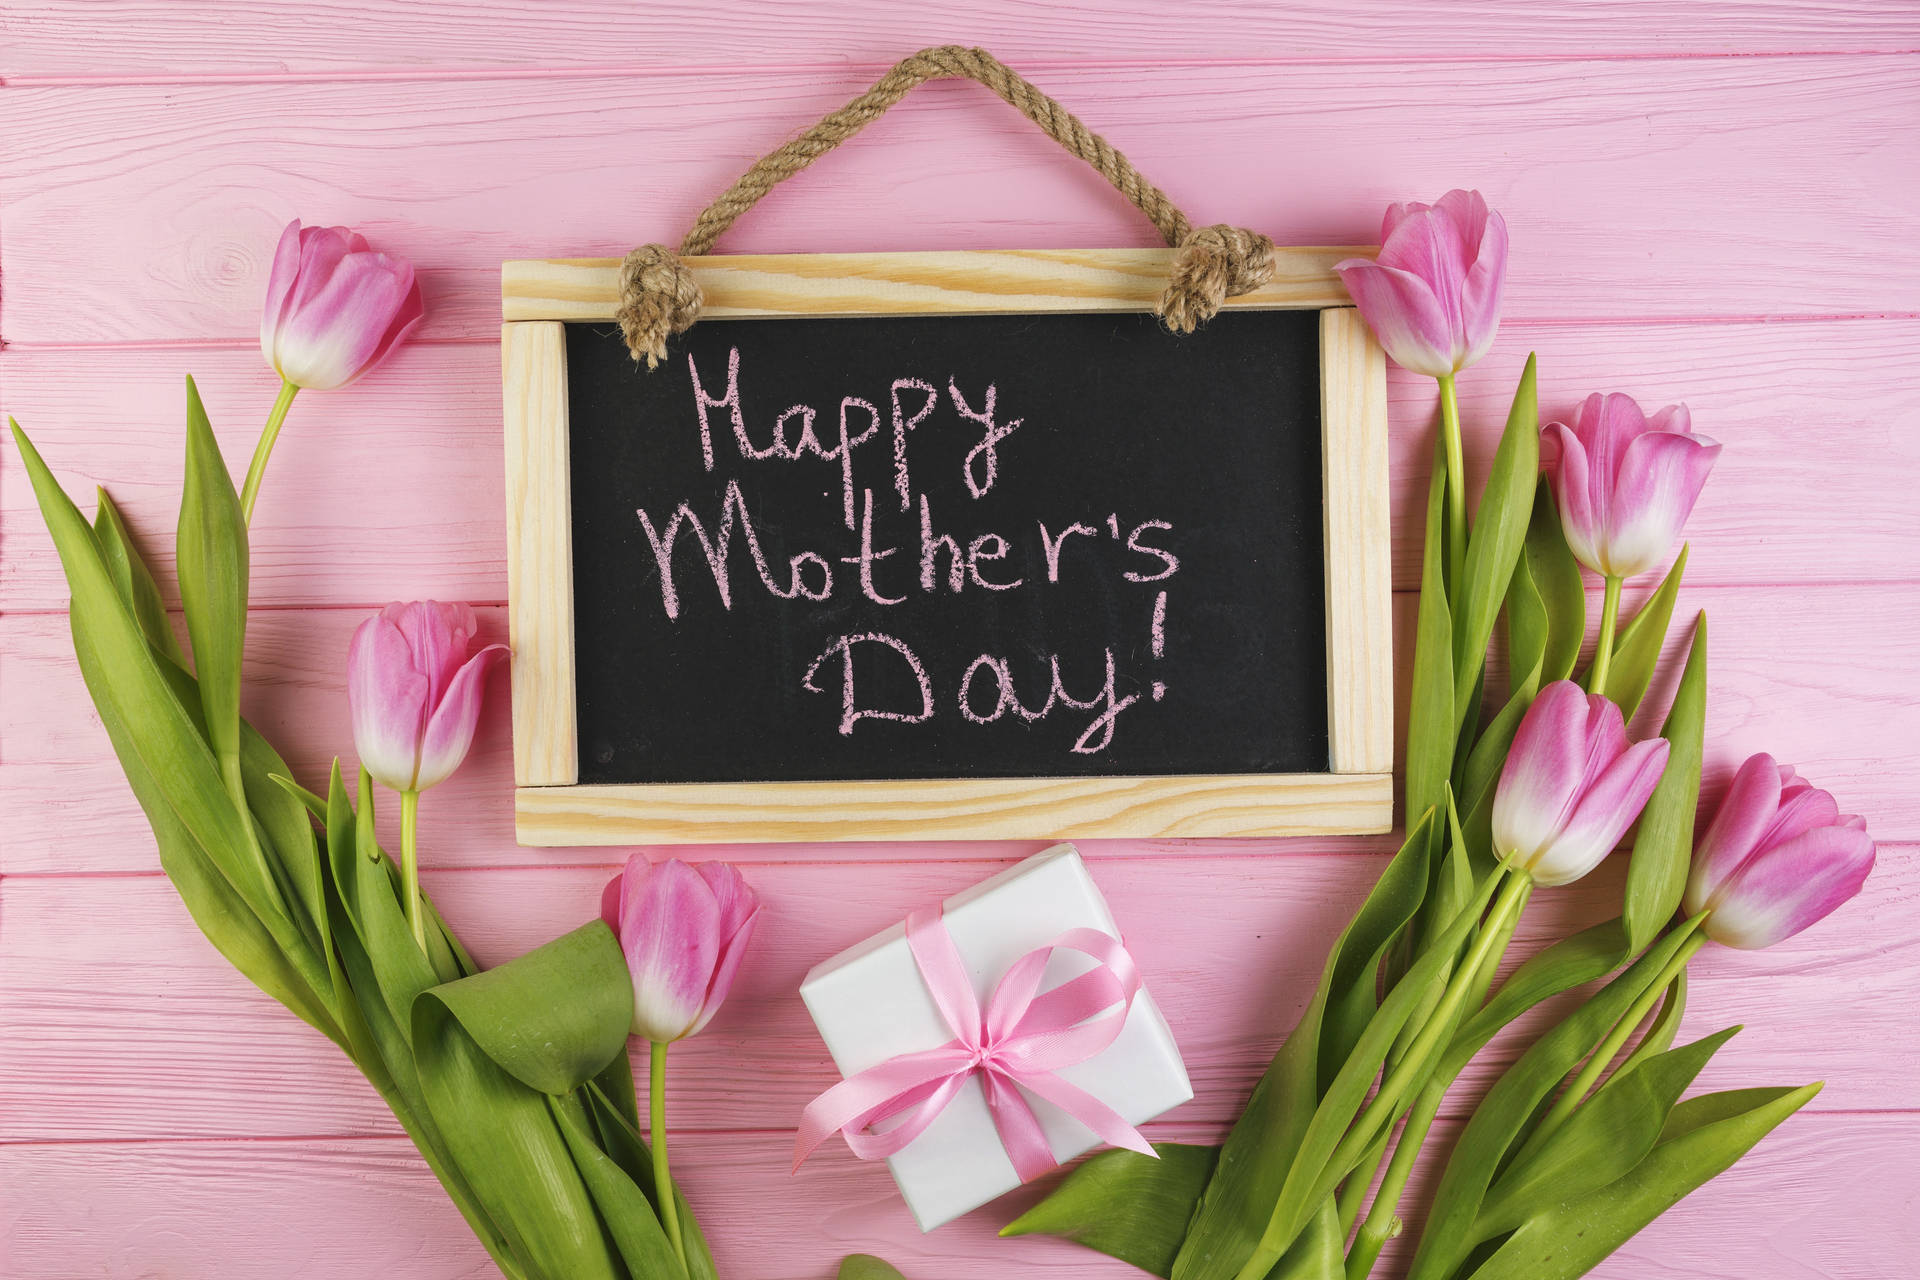 Felizdía De Las Madres - Tulipanes Rosados. Fondo de pantalla